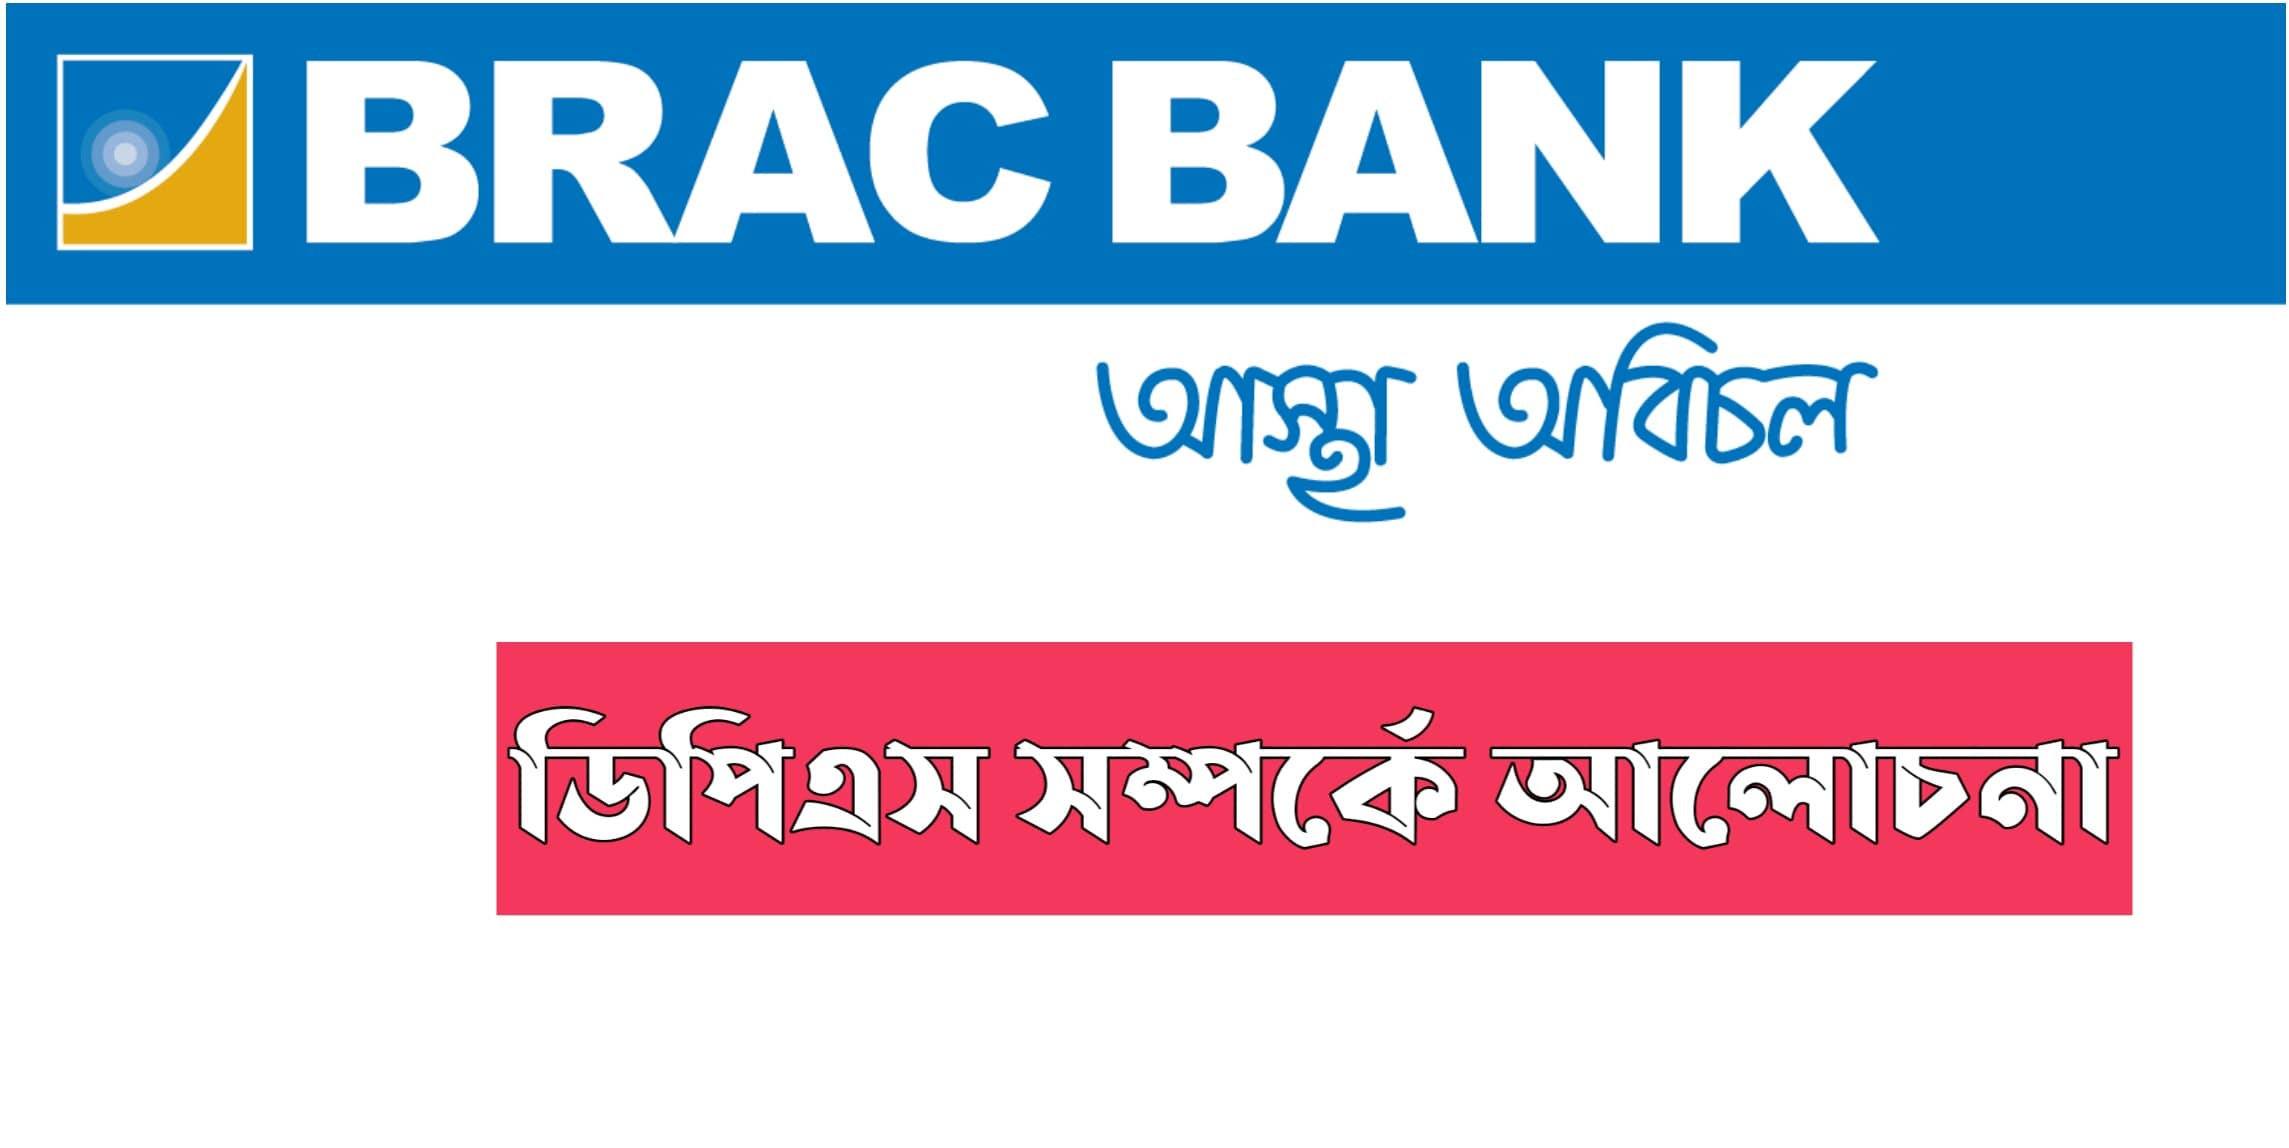 ব্রাক ব্যাংক ডিপিএস অ্যাকাউন্ট বিস্তারিত | Brac Bank DPS